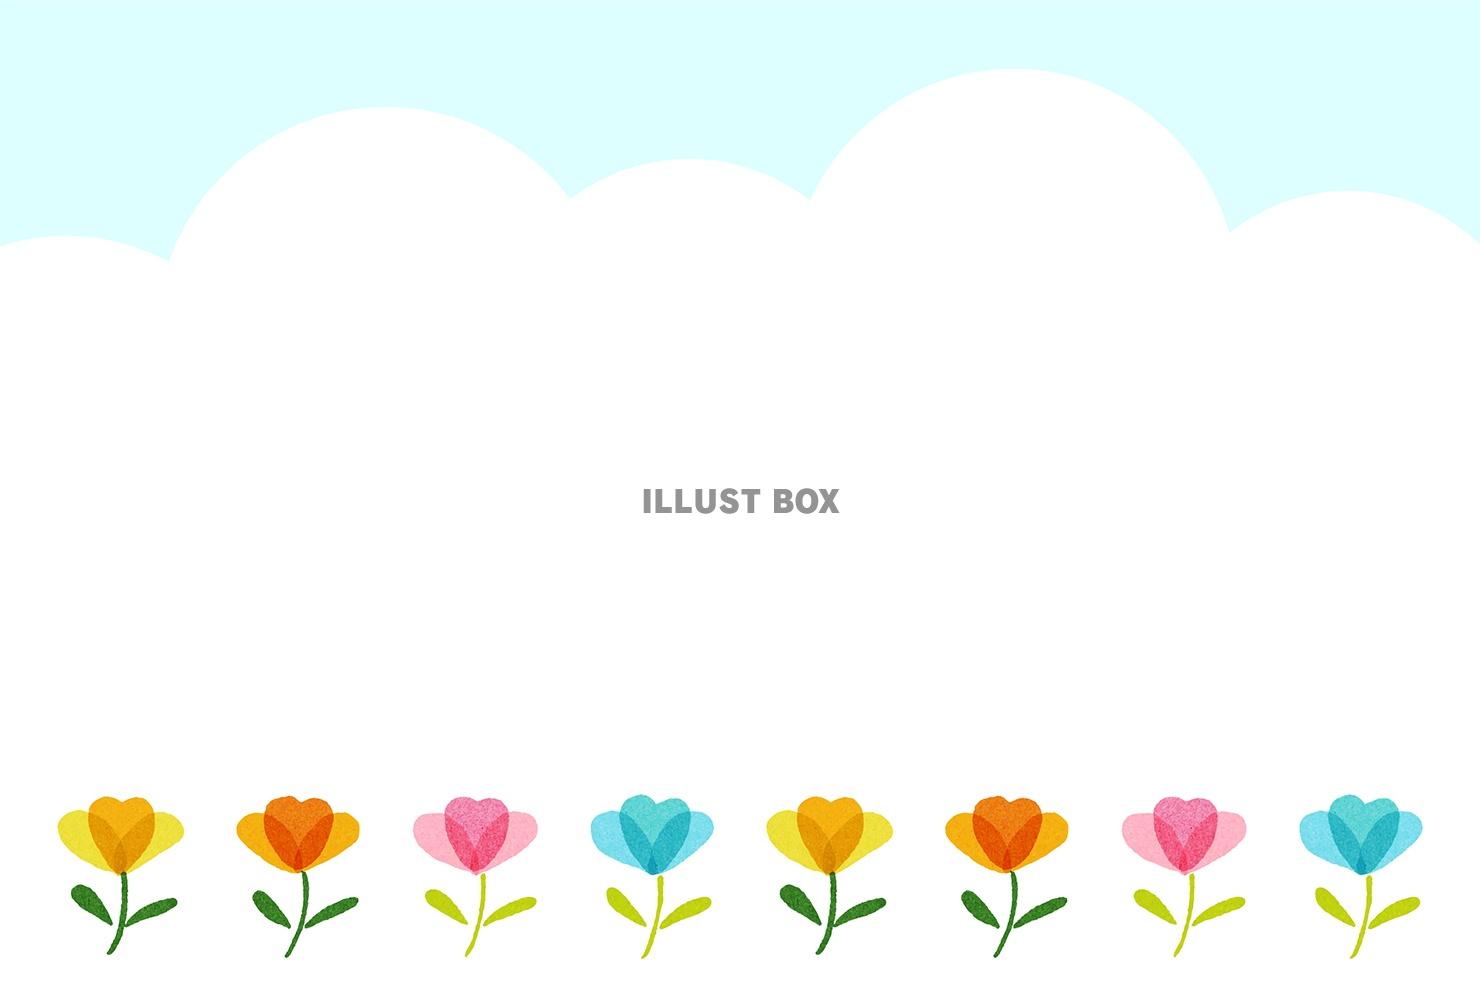 並んだ花のイラストのメッセージカード